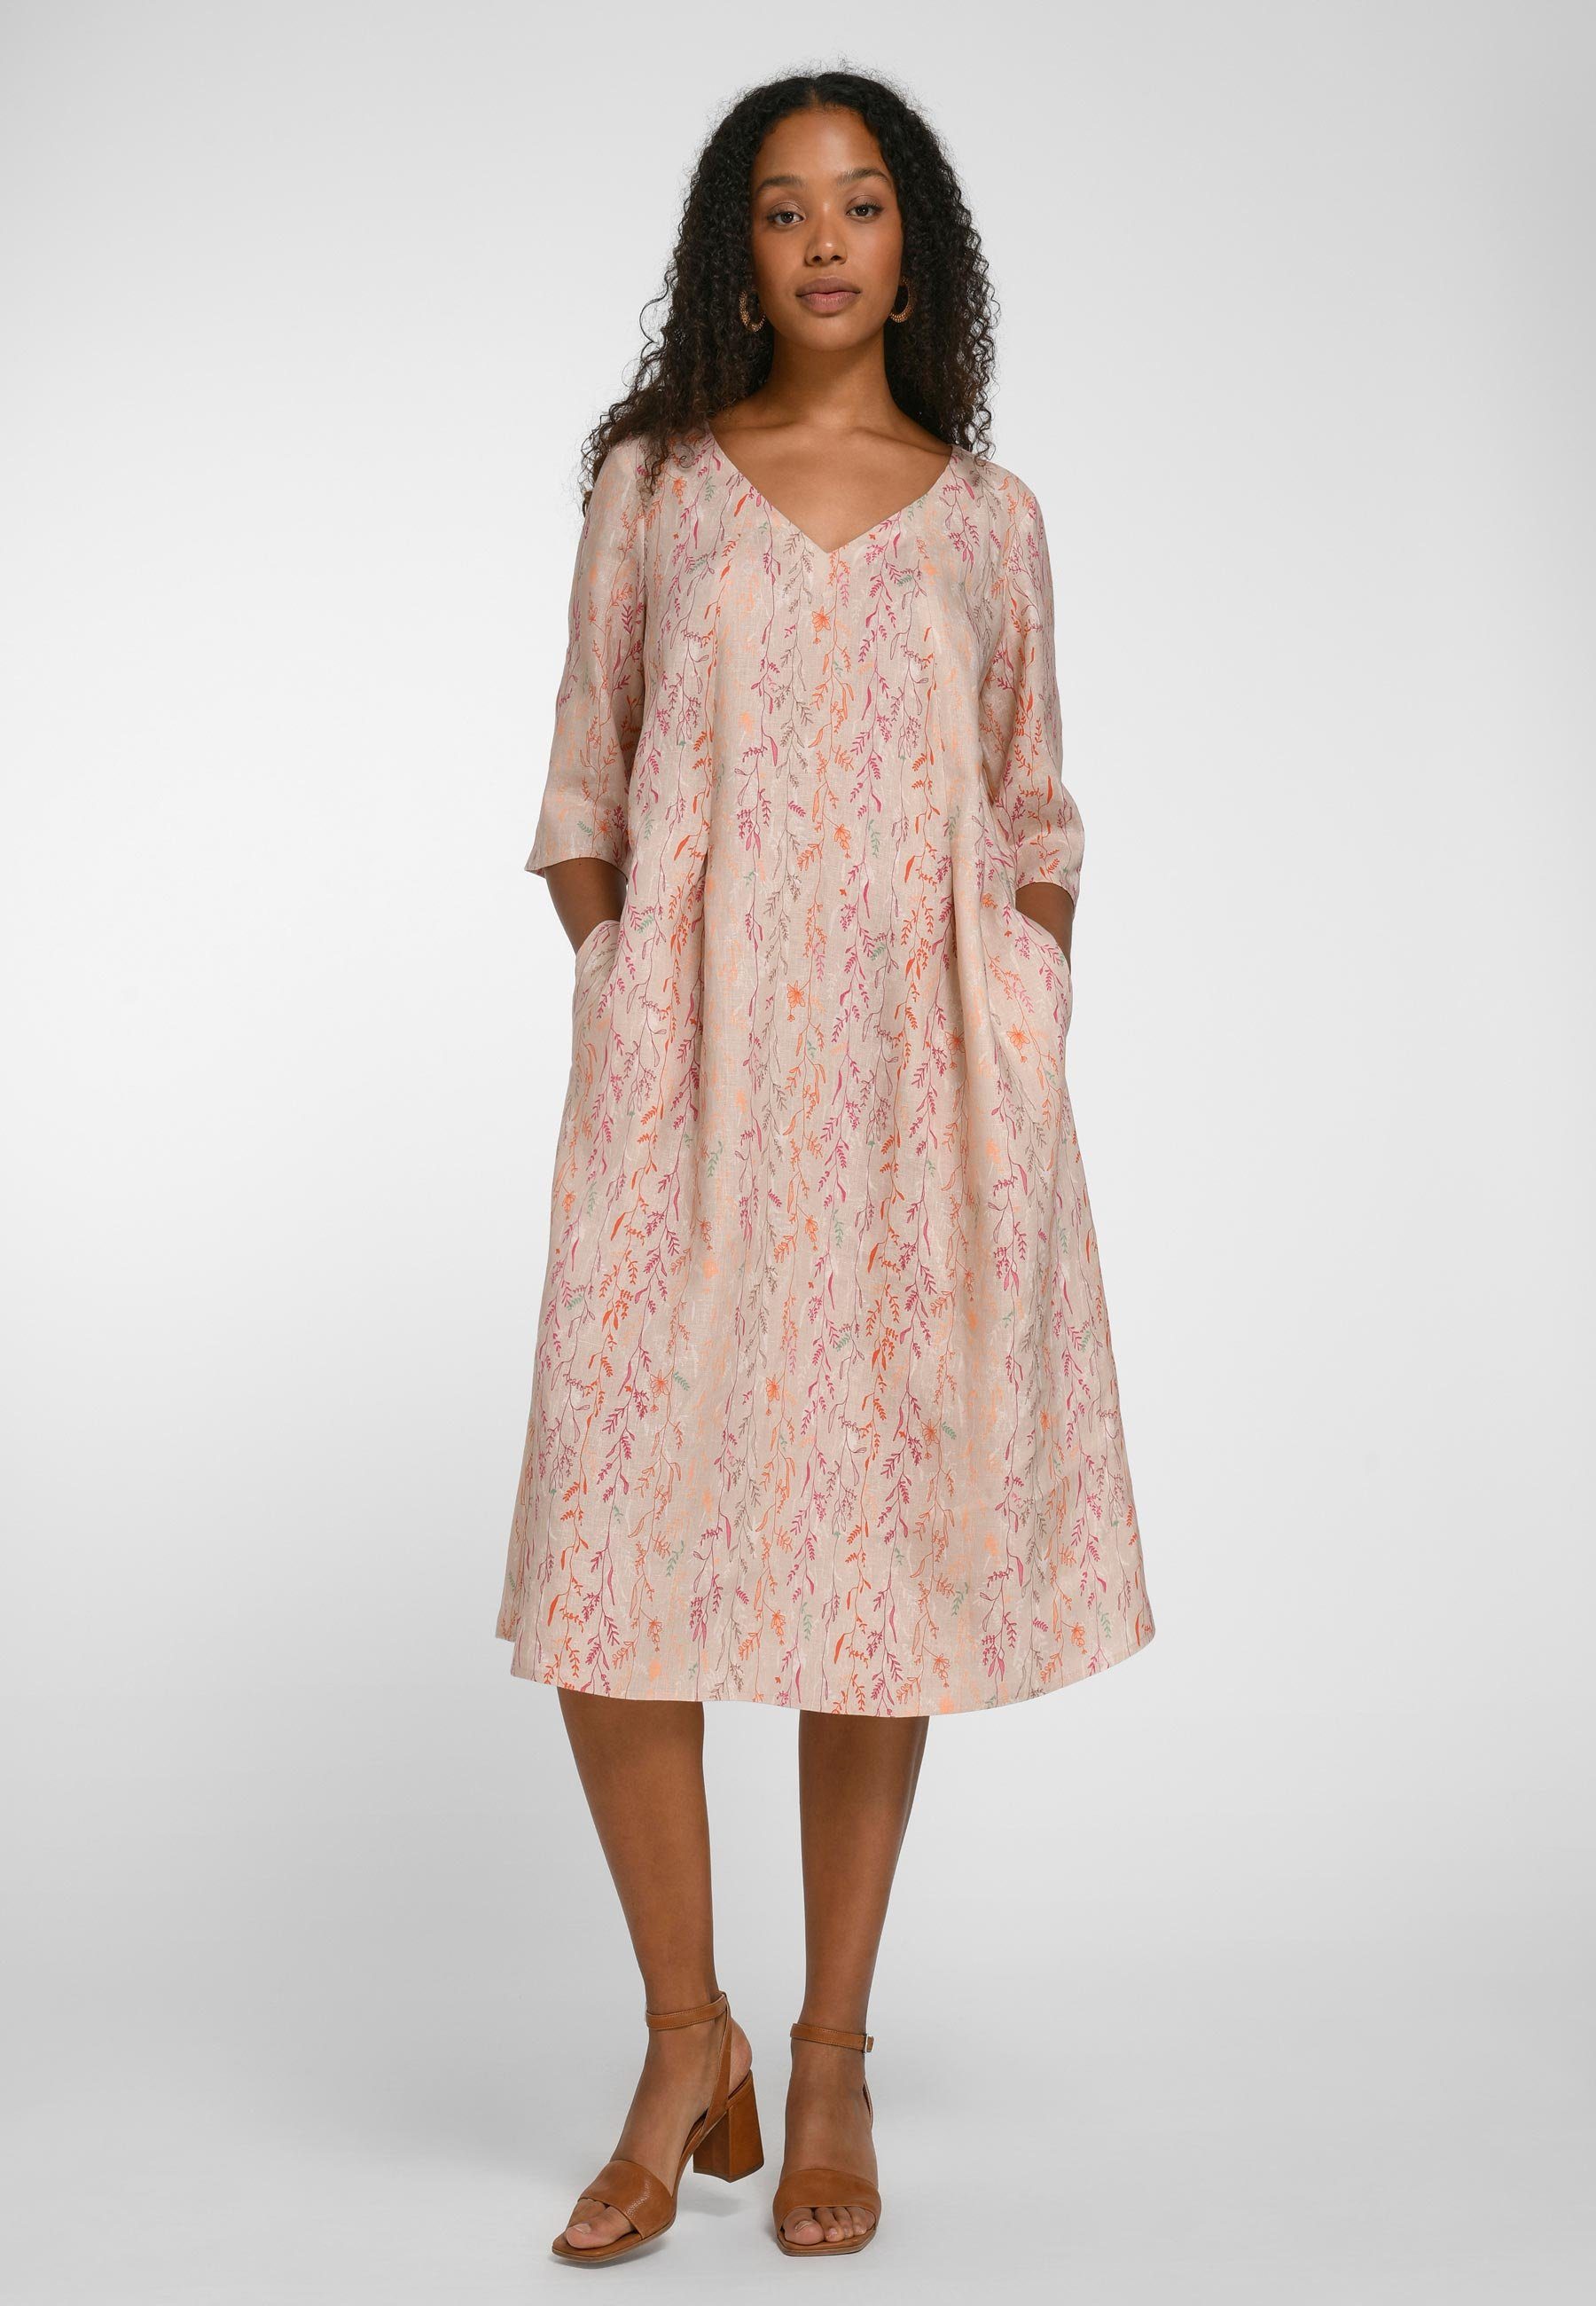 modernem A-Linien-Kleid Linen Aura Anna Design mit